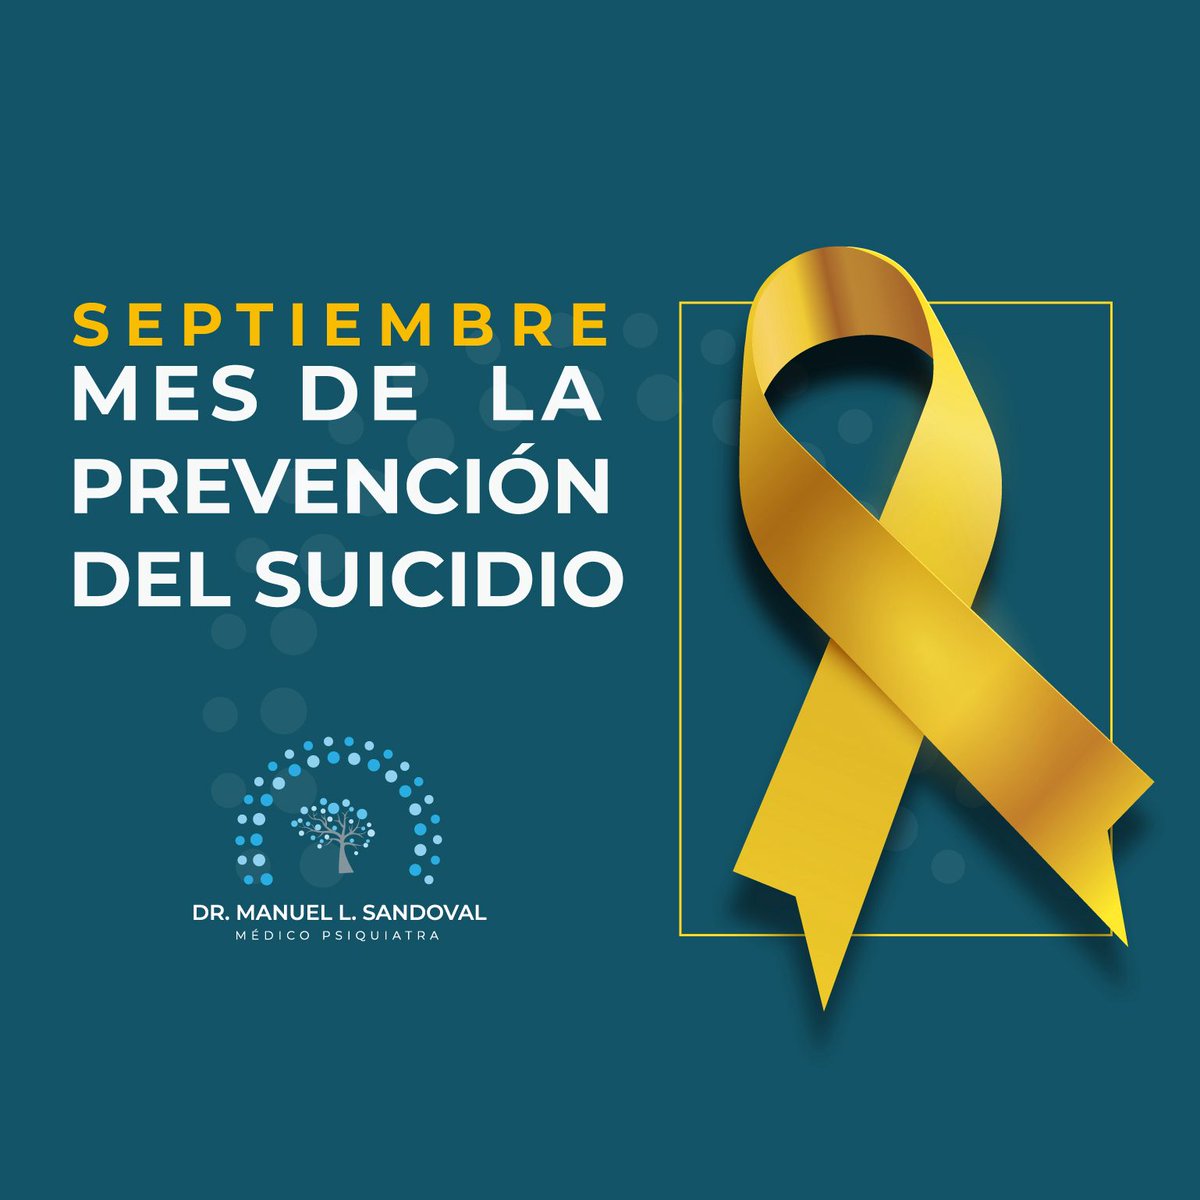 En 2003, la #OMS  estableció el 10 de septiembre como el “Día Mundial para la Prevención del Suicidio”, con el objetivo de que las naciones implementen y promuevan acciones para su prevención.

#Haztuparte #suicide #suicideprevention #prevenciondesuicidio #ComandoPsycho